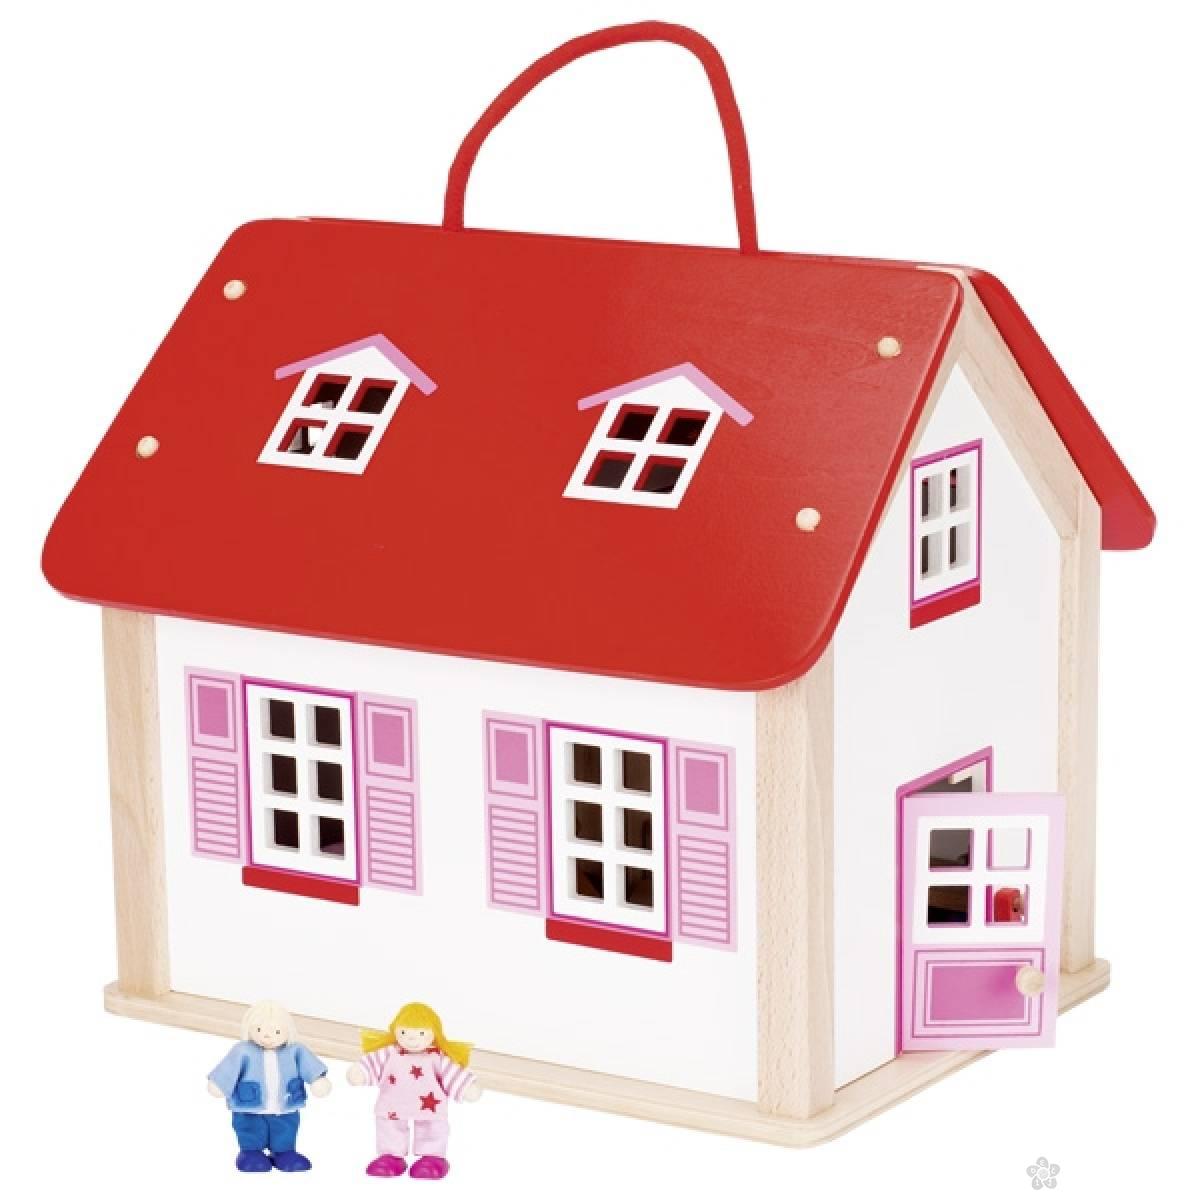 Drvena kuća kofer za lutke sa dodacima 51780 